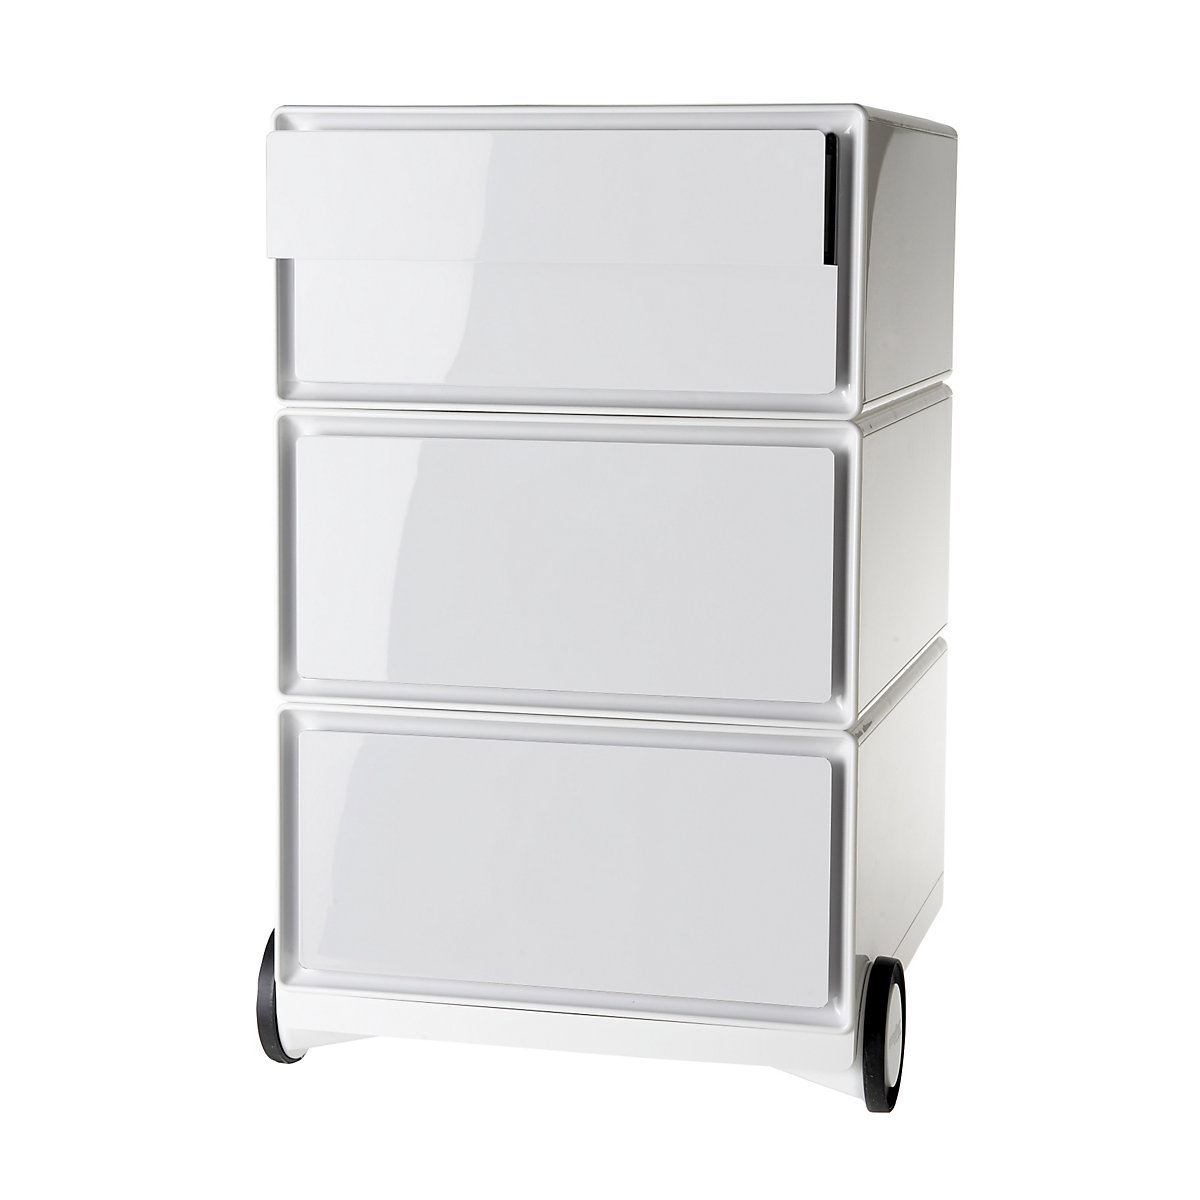 Pomični predalnik easyBox® – Paperflow, 2 predala, 2 nižja predala, bel / bel-11